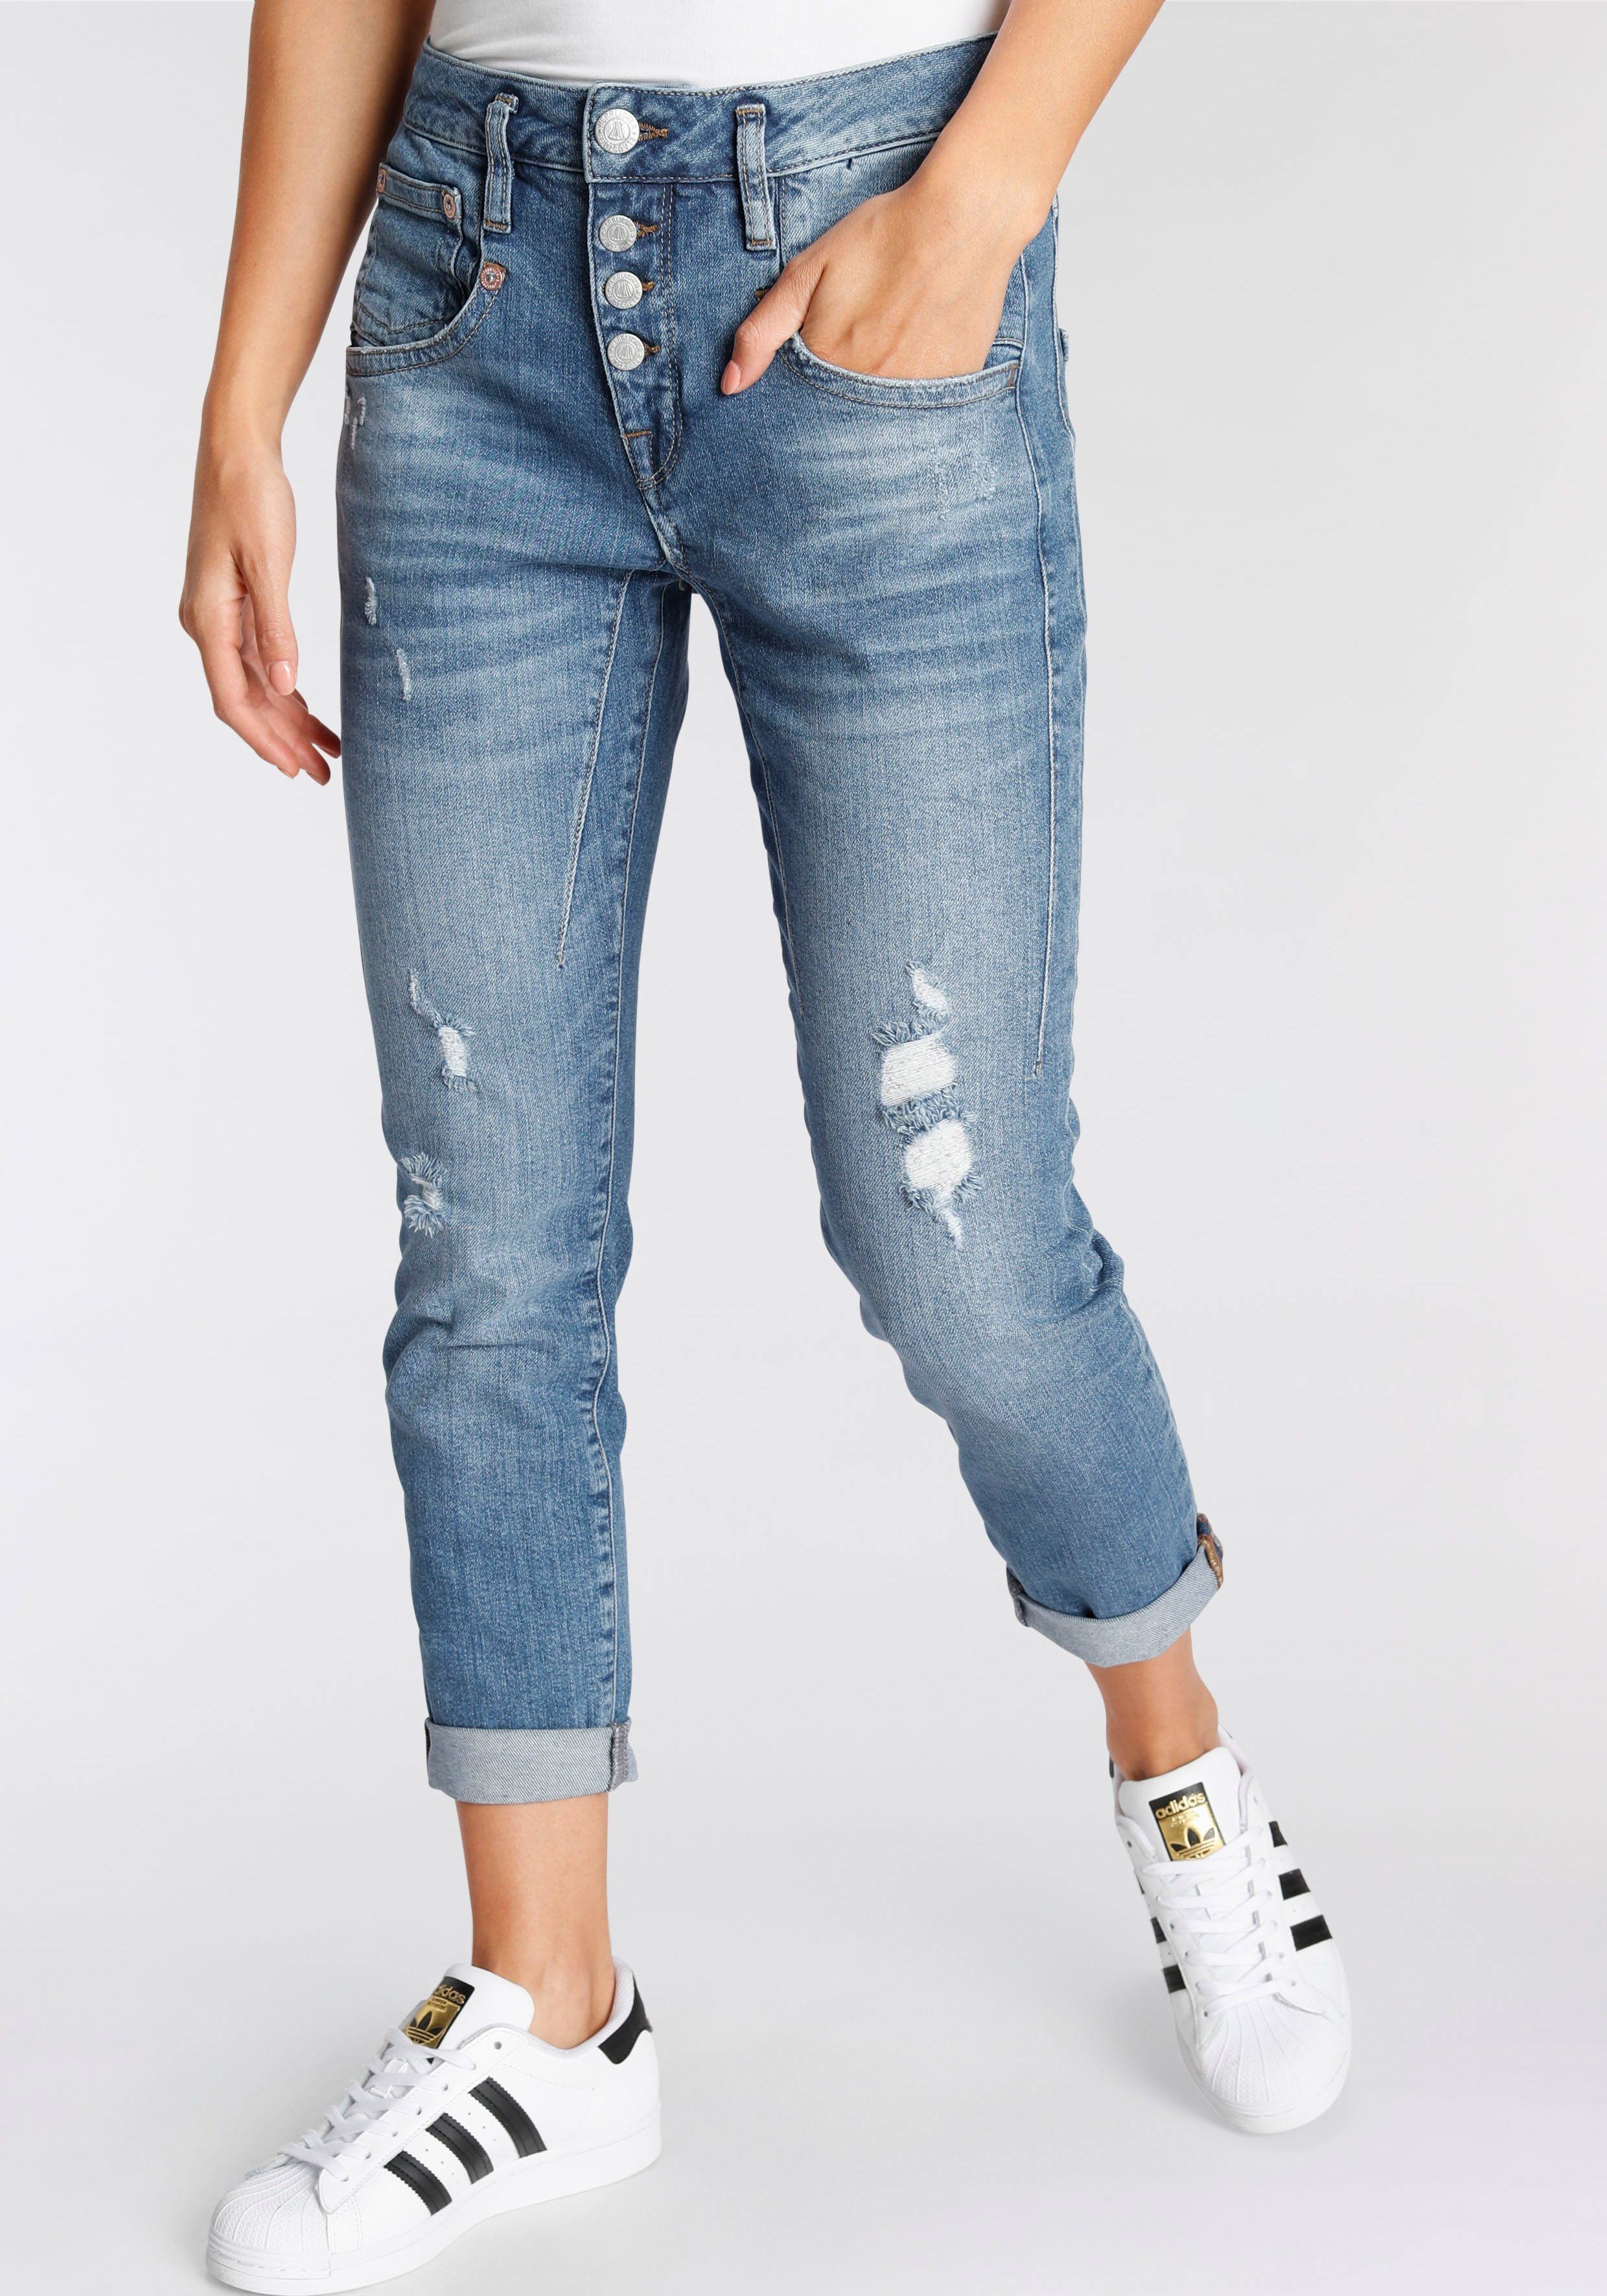 Herrlicher Damen Jeans online kaufen | OTTO